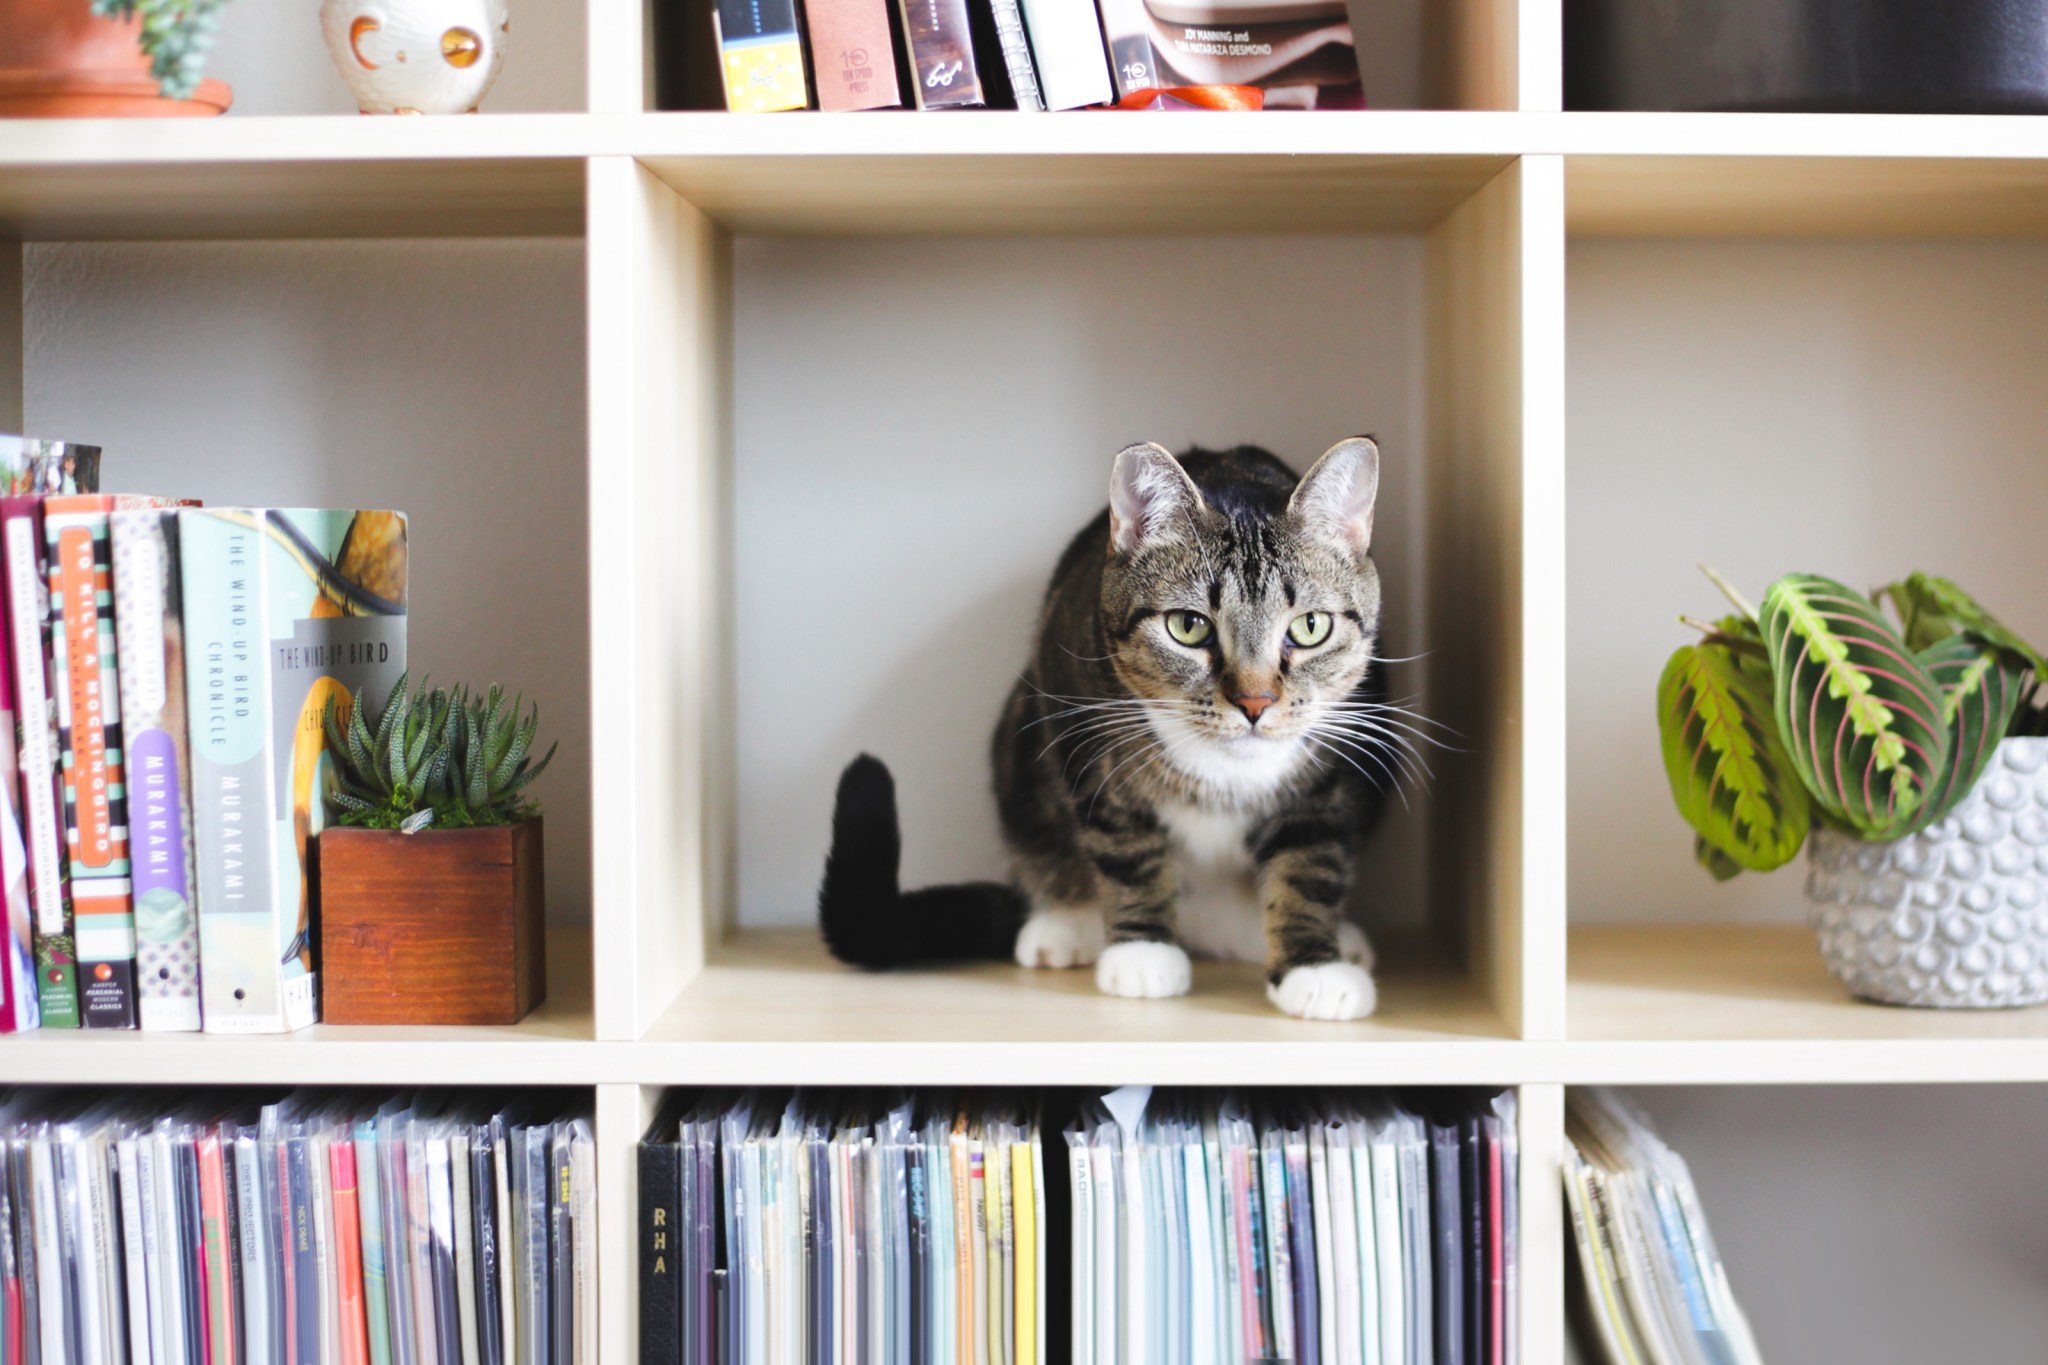 Cat on organized bookshelves